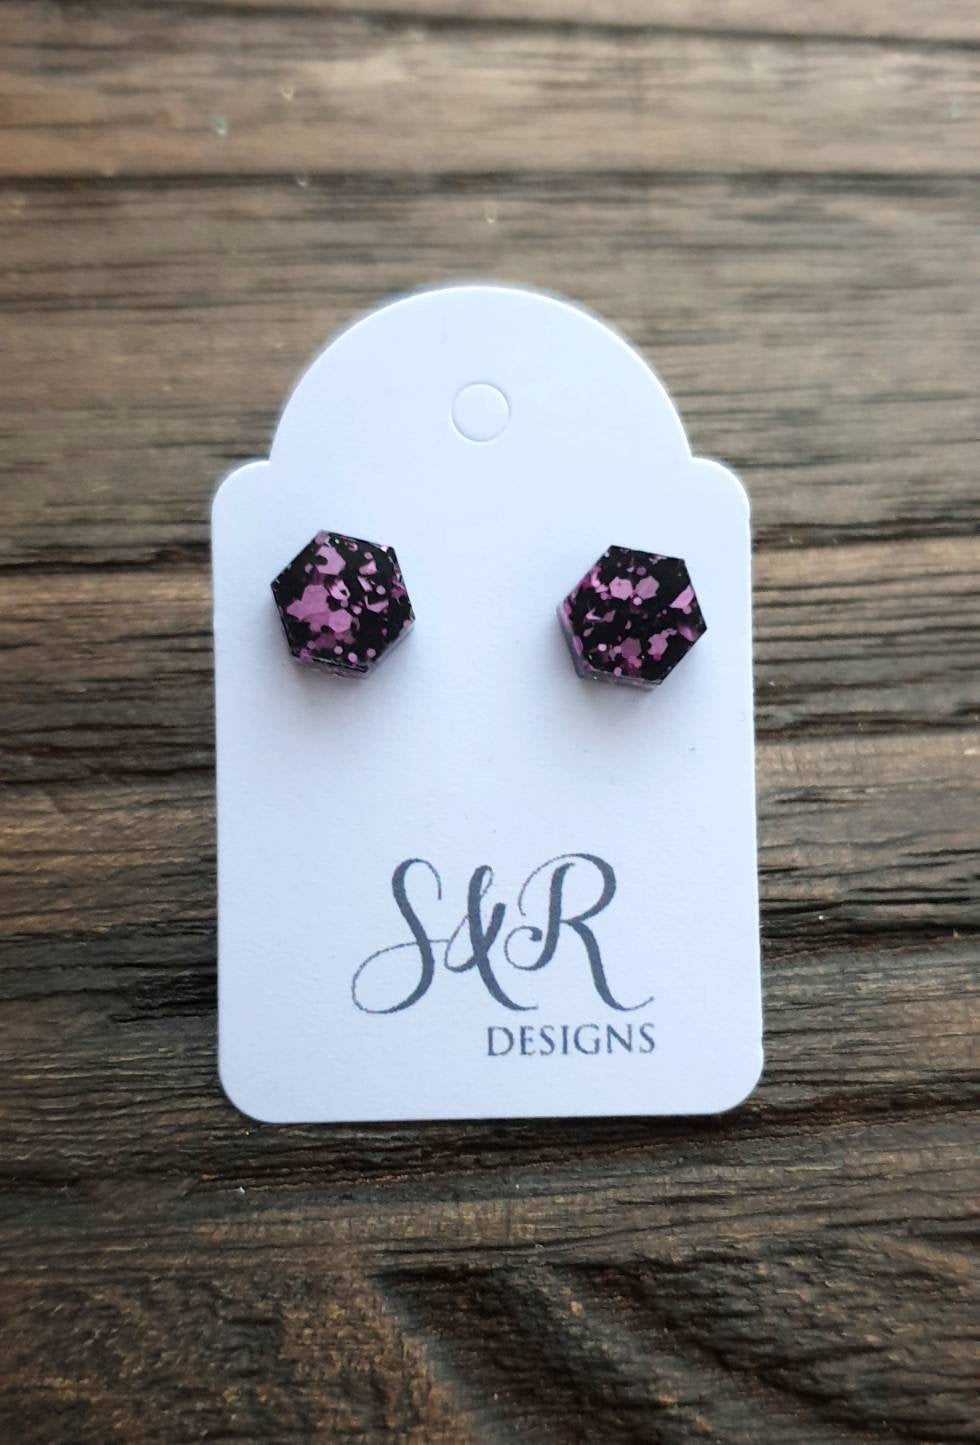 Hexagon Resin Stud Earrings, Pink Black Glitter Earrings. Stainless Steel Stud Earrings. 10mm or 6mm